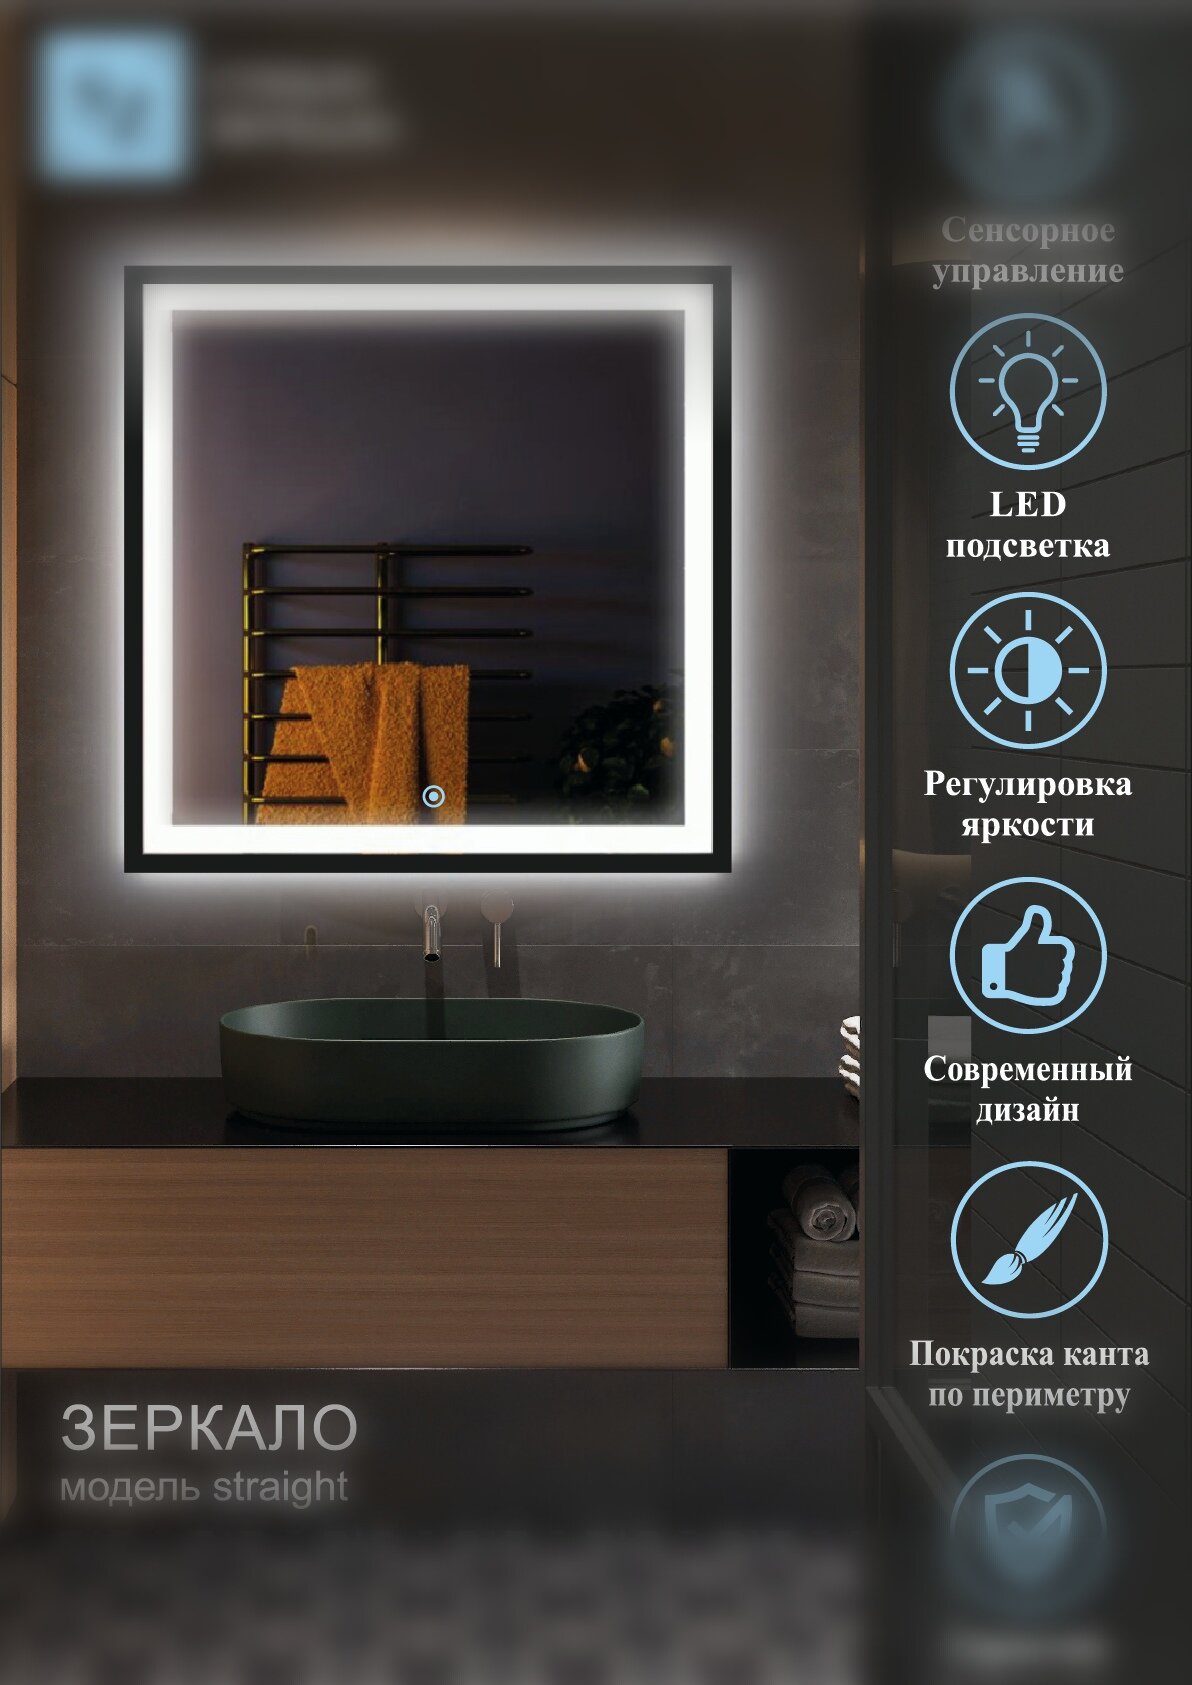 Зеркало интерьерное с подсветкой прямоугольное 60*120см для ванной сенсорное управление + покраска по периметру